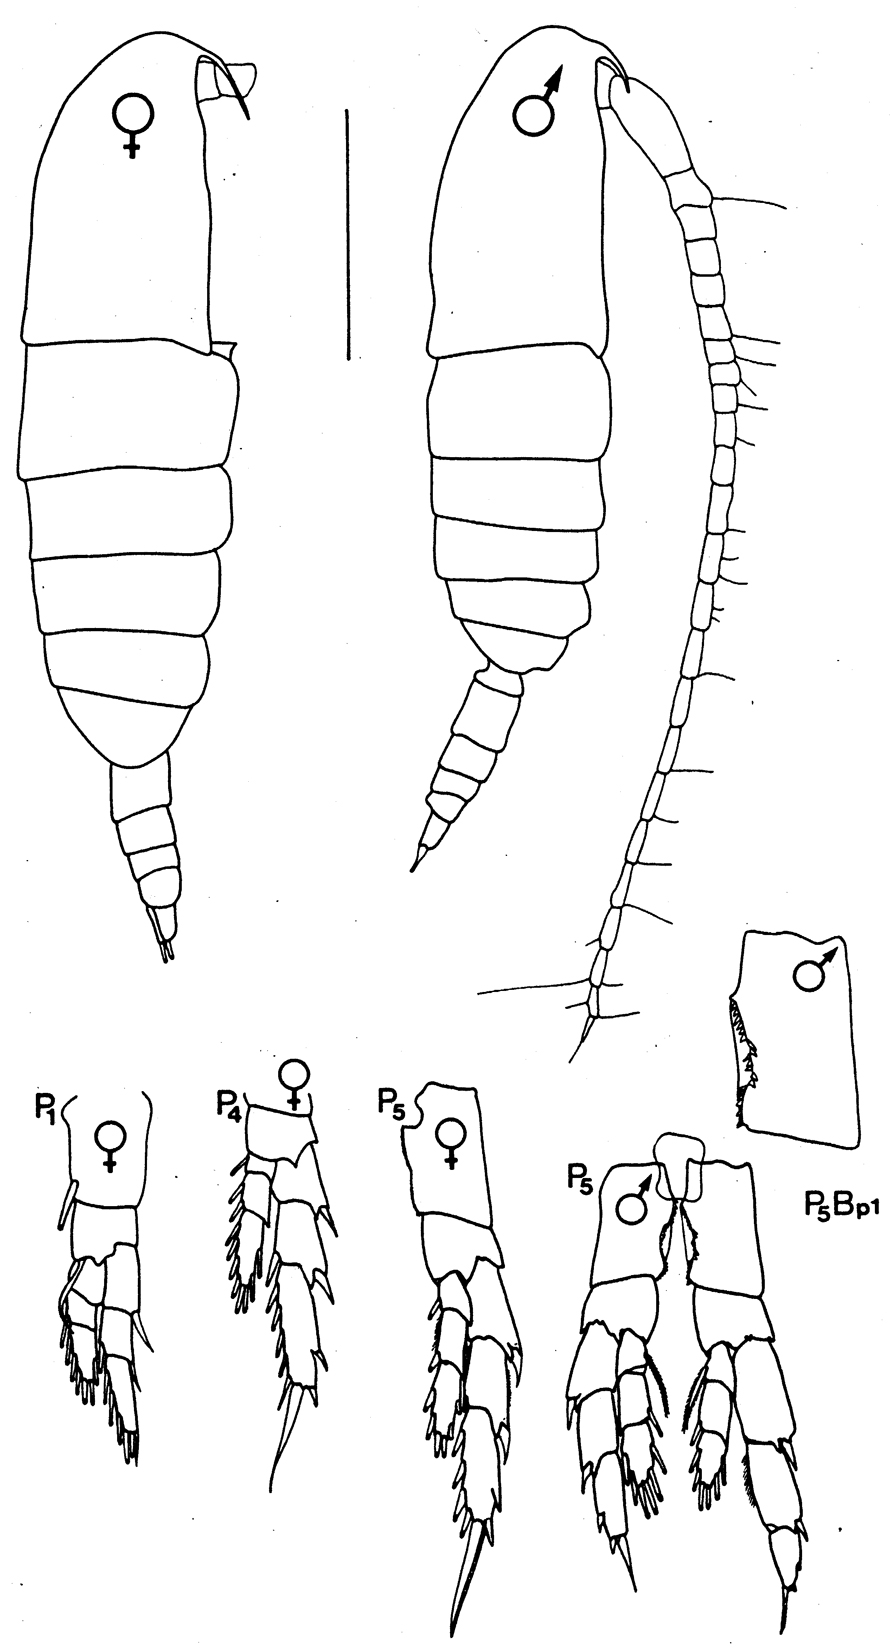 Species Calanus marshallae - Plate 2 of morphological figures